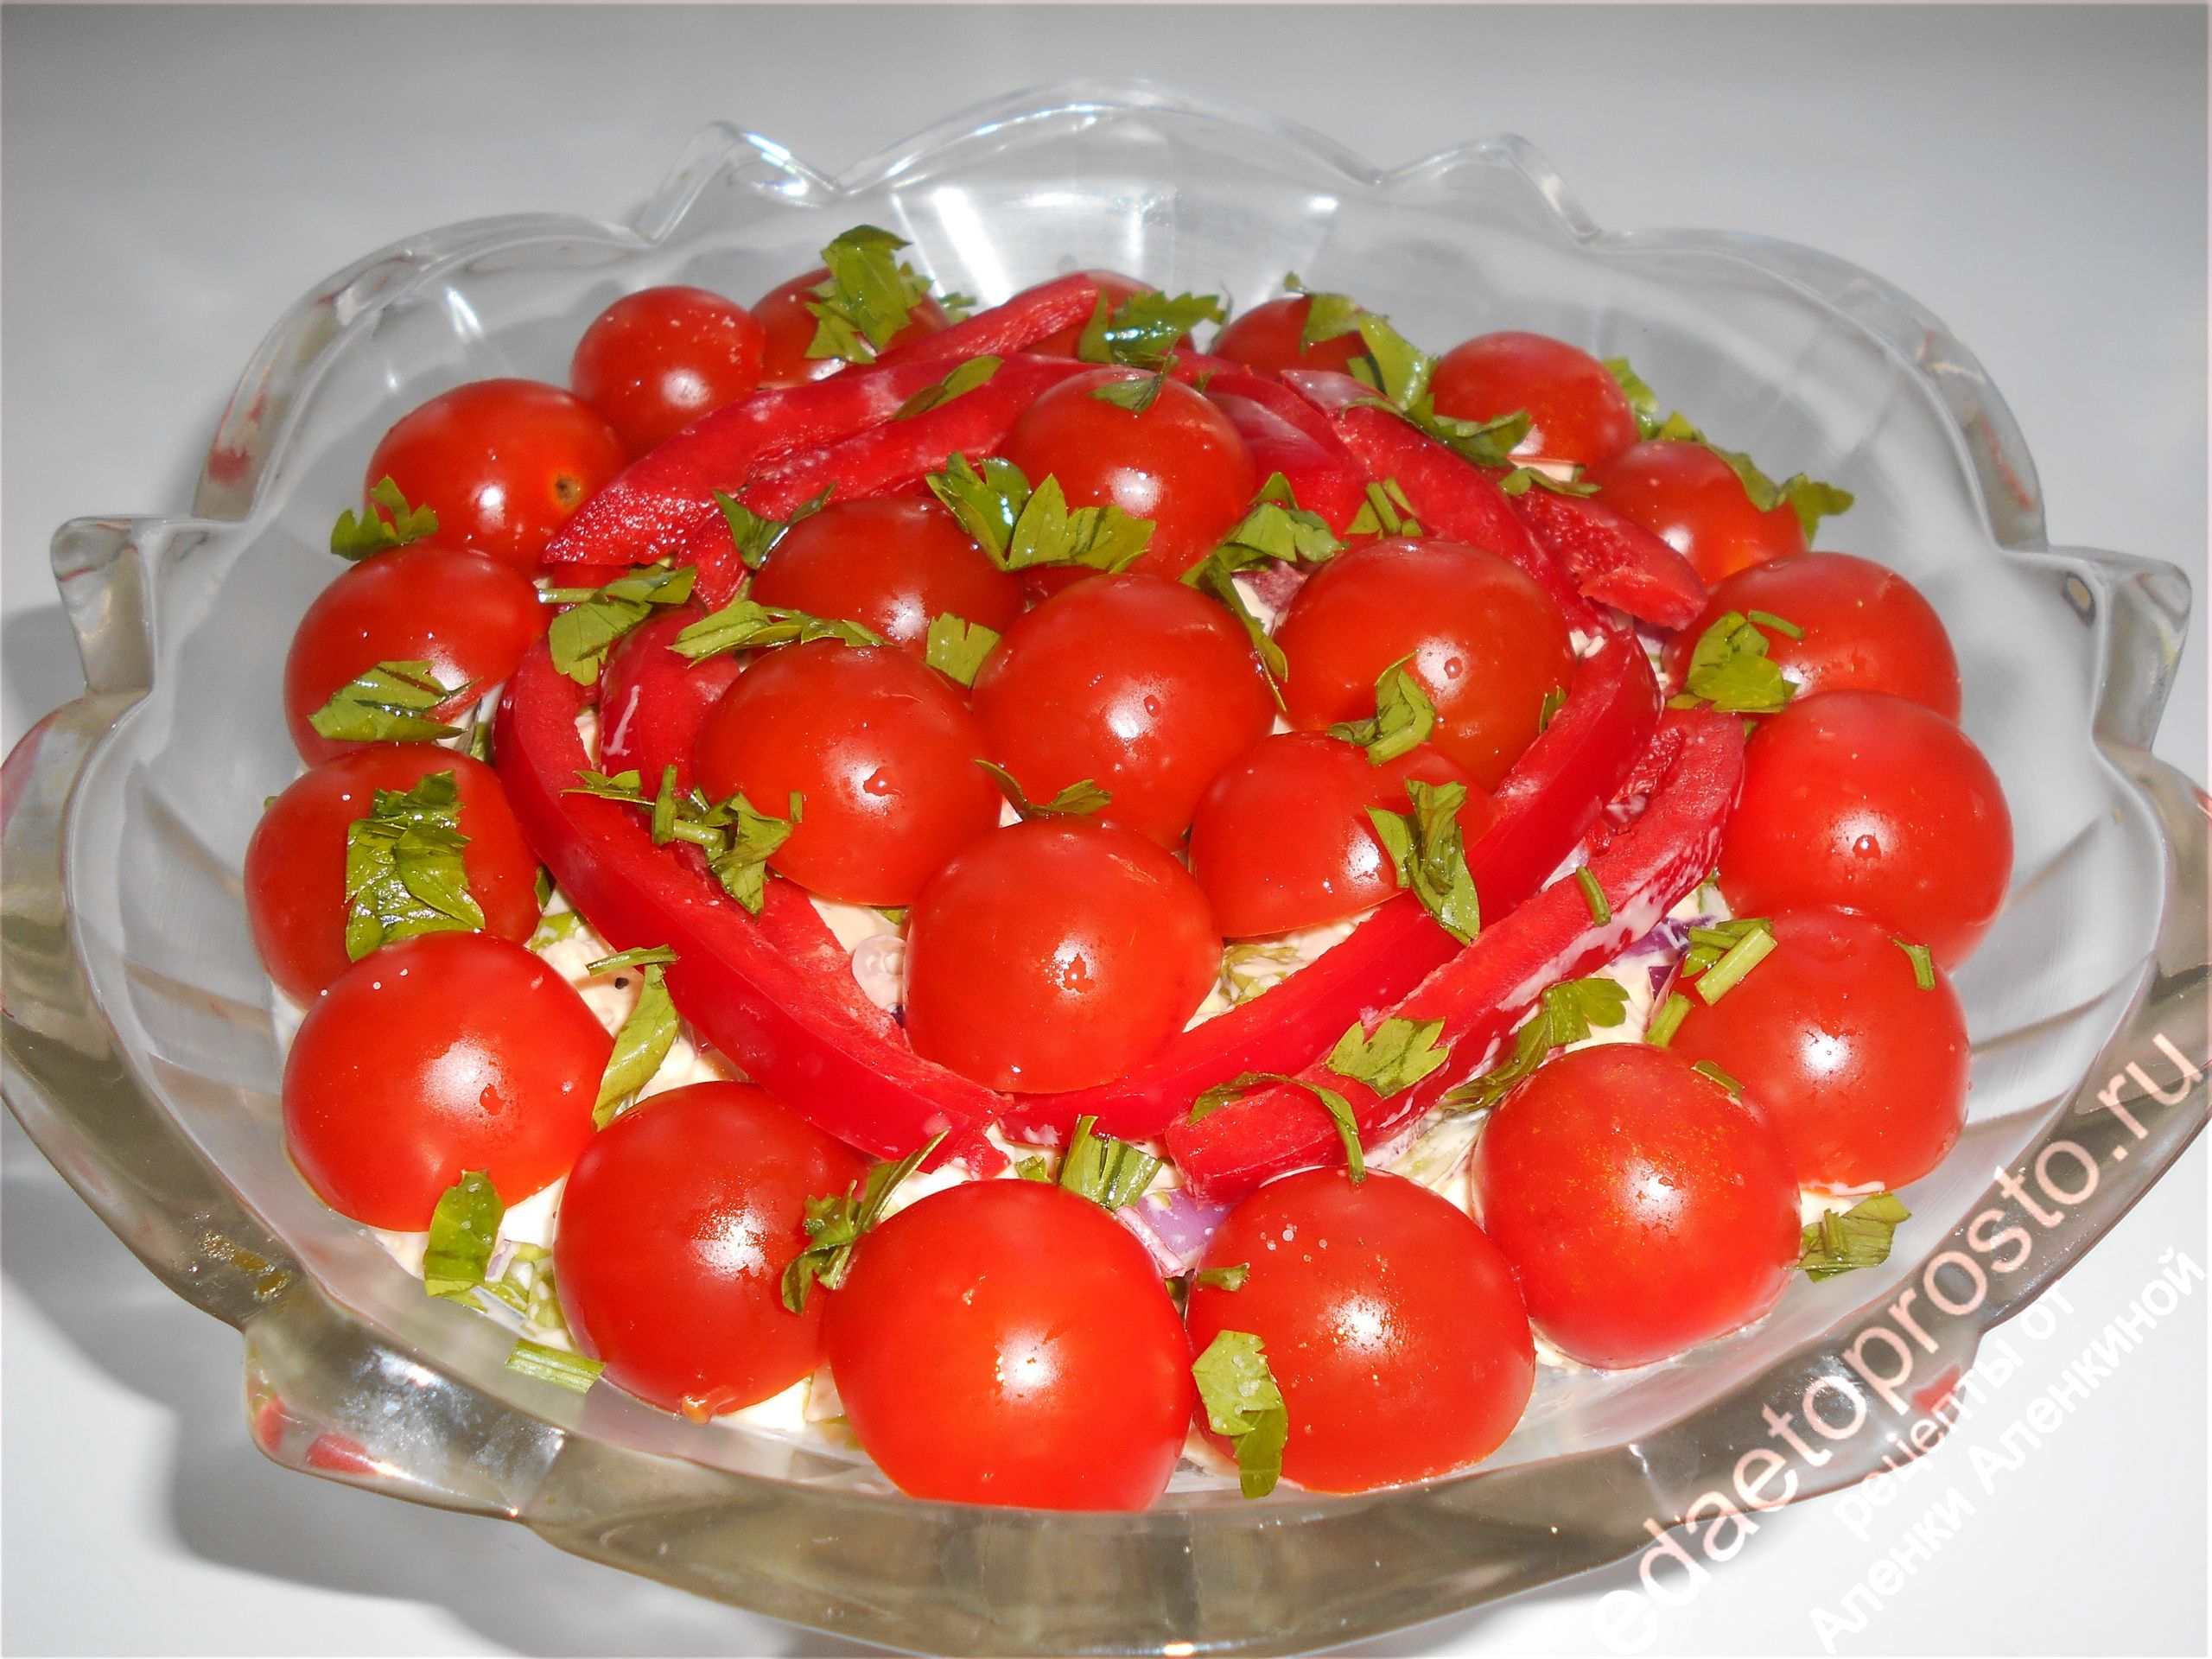 слой томатов как украшение красного салата, красивое фото томатов